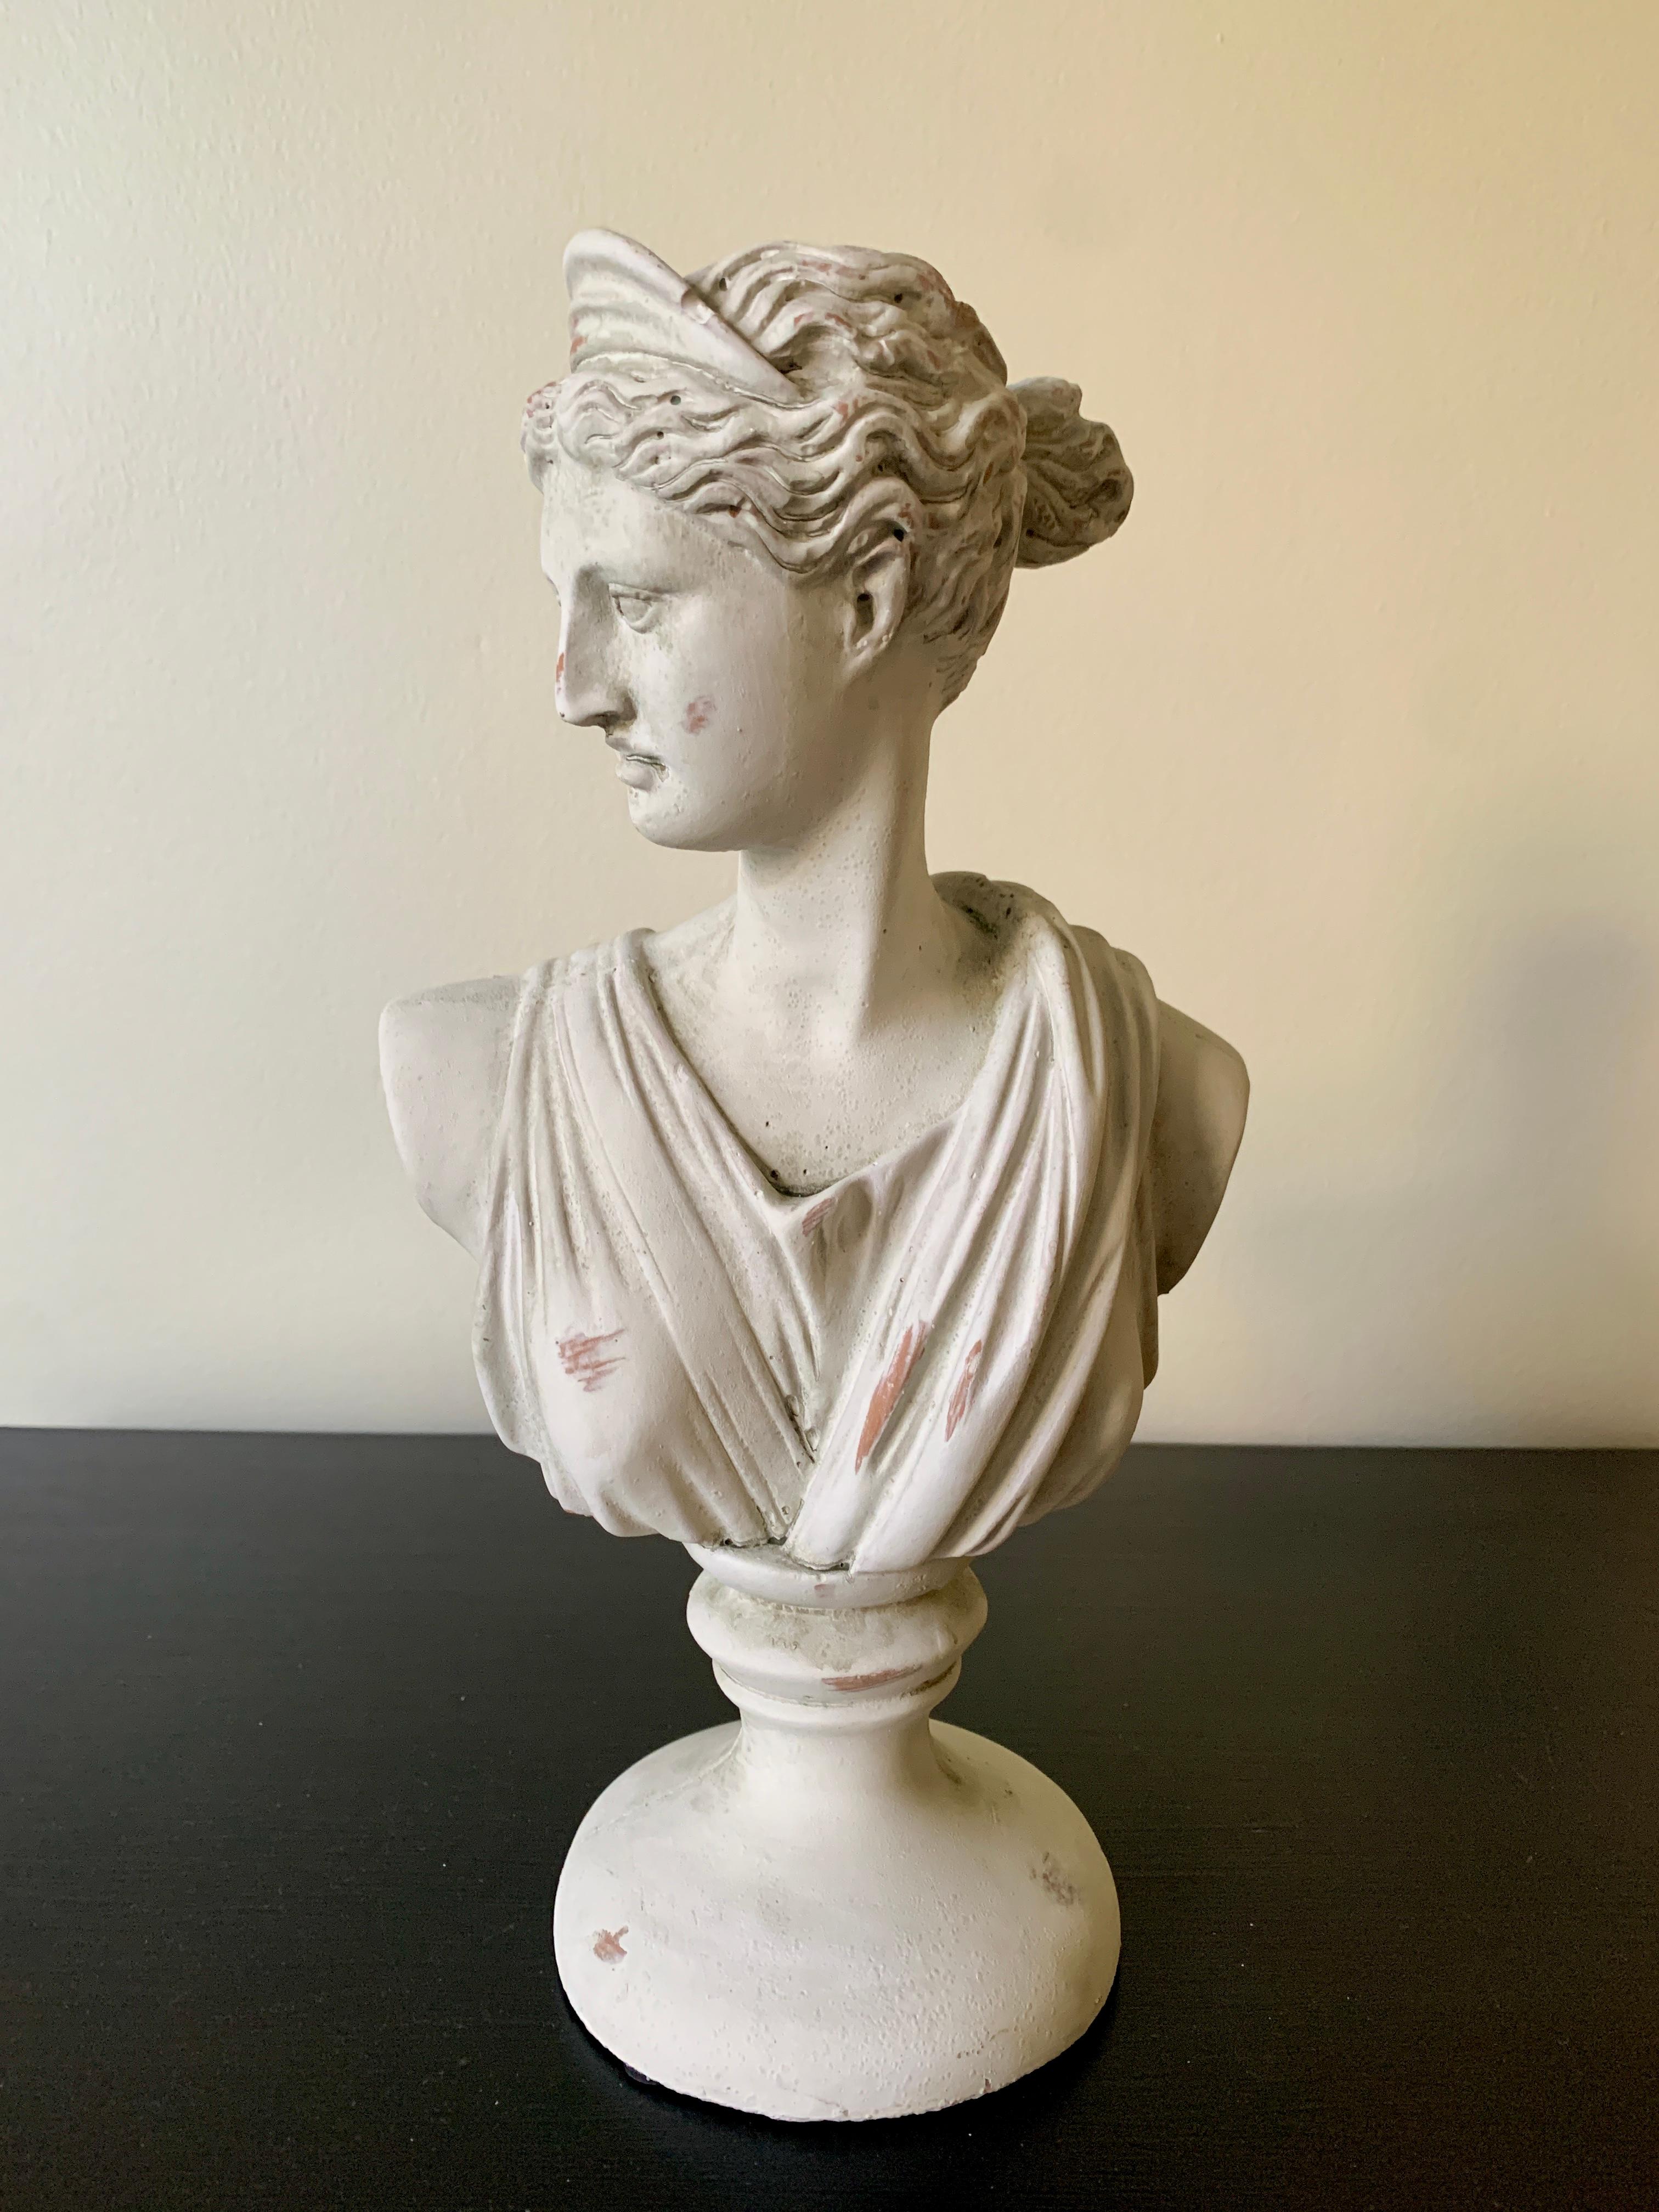 Magnifique buste en plâtre de Diane, déesse chasseresse, de style néoclassique Grand Tour.

États-Unis, 21e siècle

Dimensions : 8 